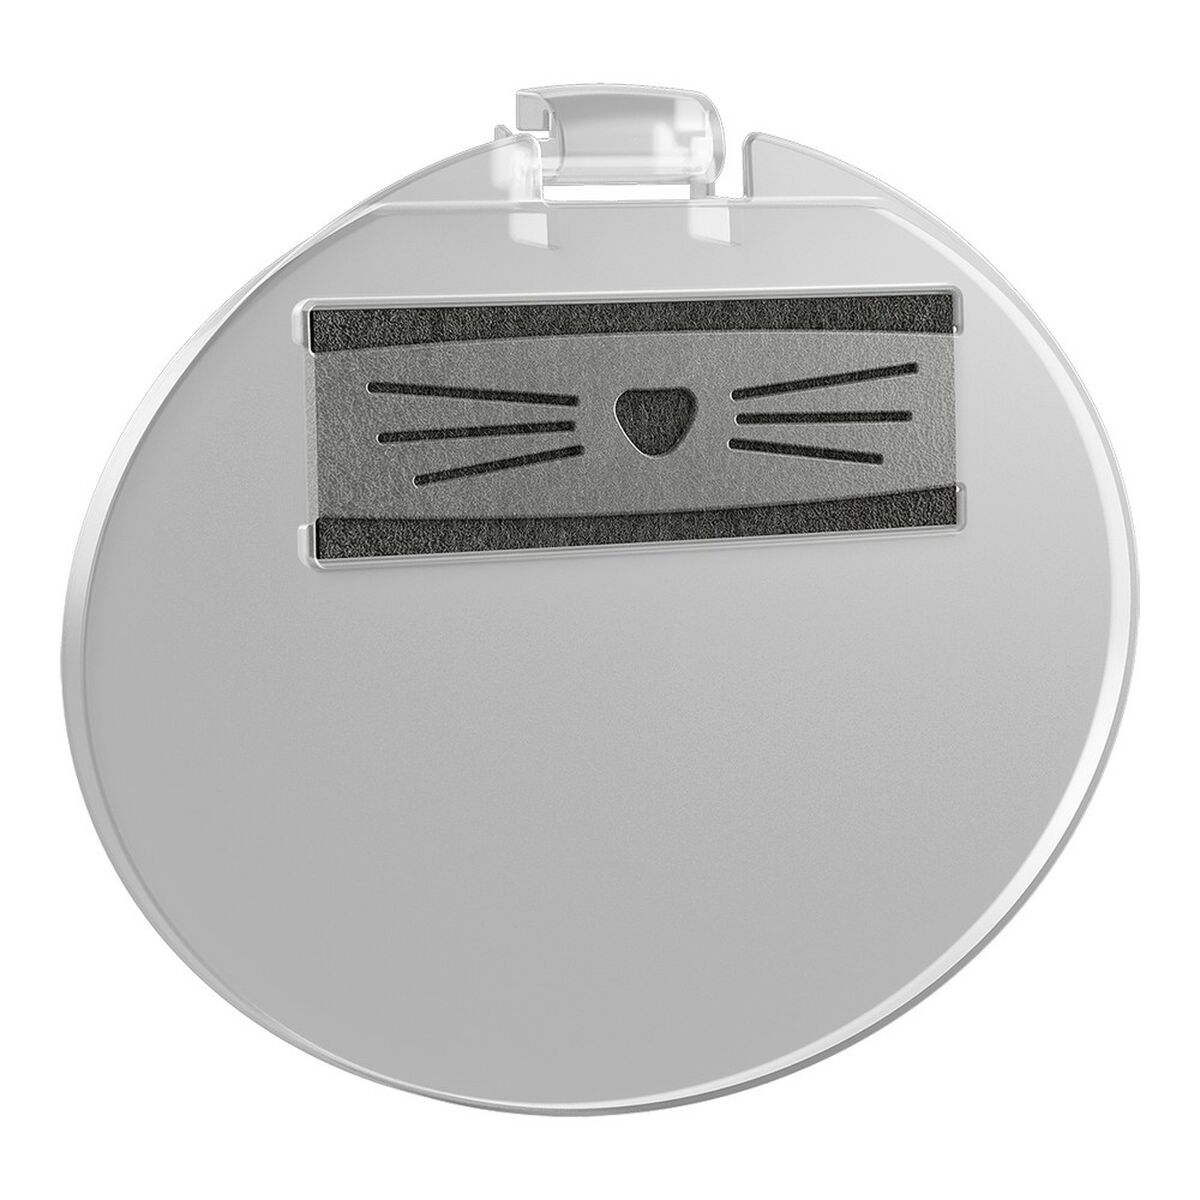 Porte d'accès Rotho My Pet Bella Bac à litière pour chats Transparent